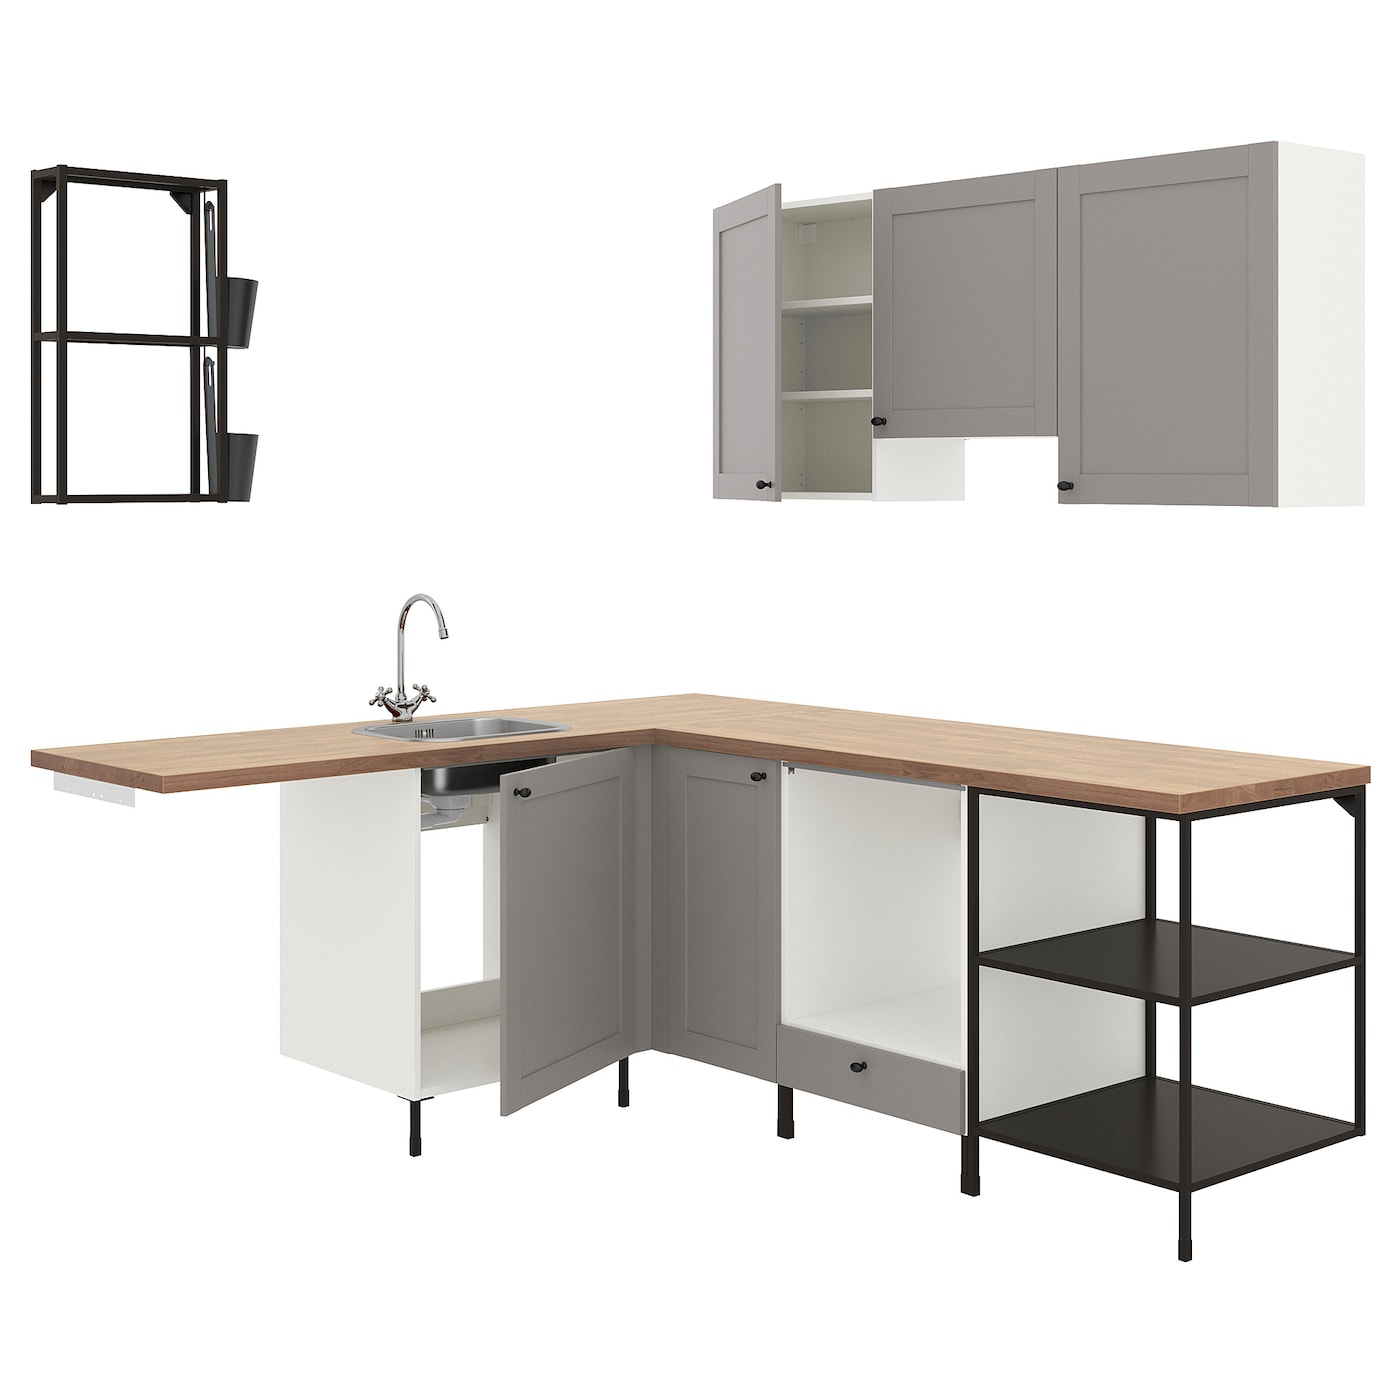 Угловая кухонная комбинация для хранения - ENHET  IKEA/ ЭНХЕТ ИКЕА, 190,5х228,5х75 см, белый/серый/бежевый/черный